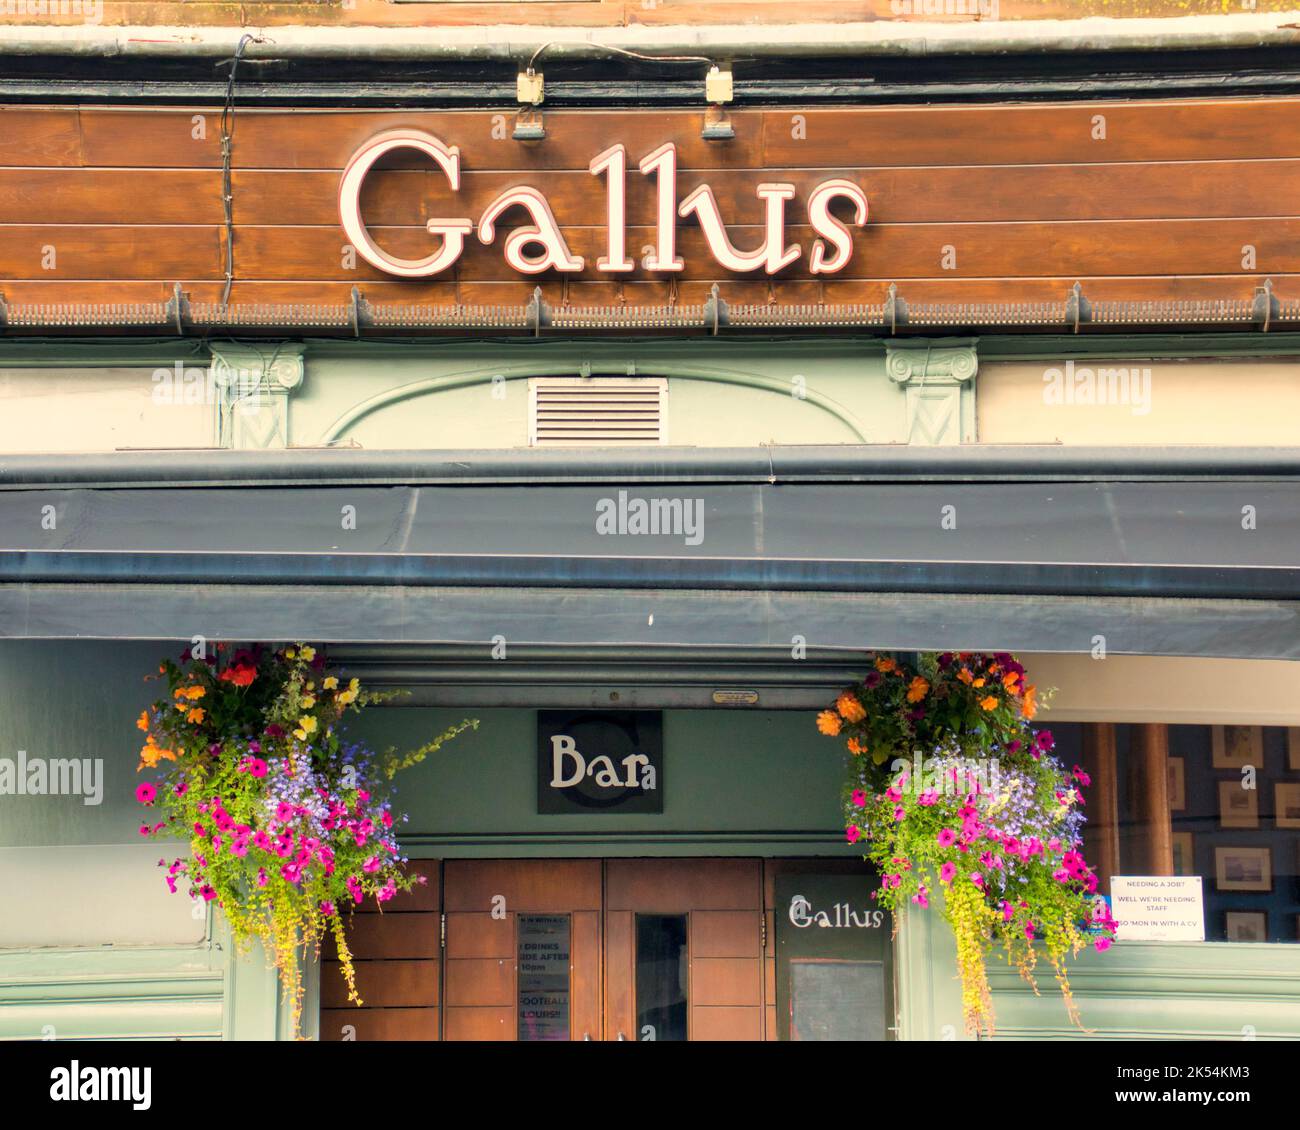 Le nom de Bar Gallus est familier. 80 Dumbarton Road Partick Glasgow G11 6NX. Traduit comme audacieux ou audacieux Banque D'Images